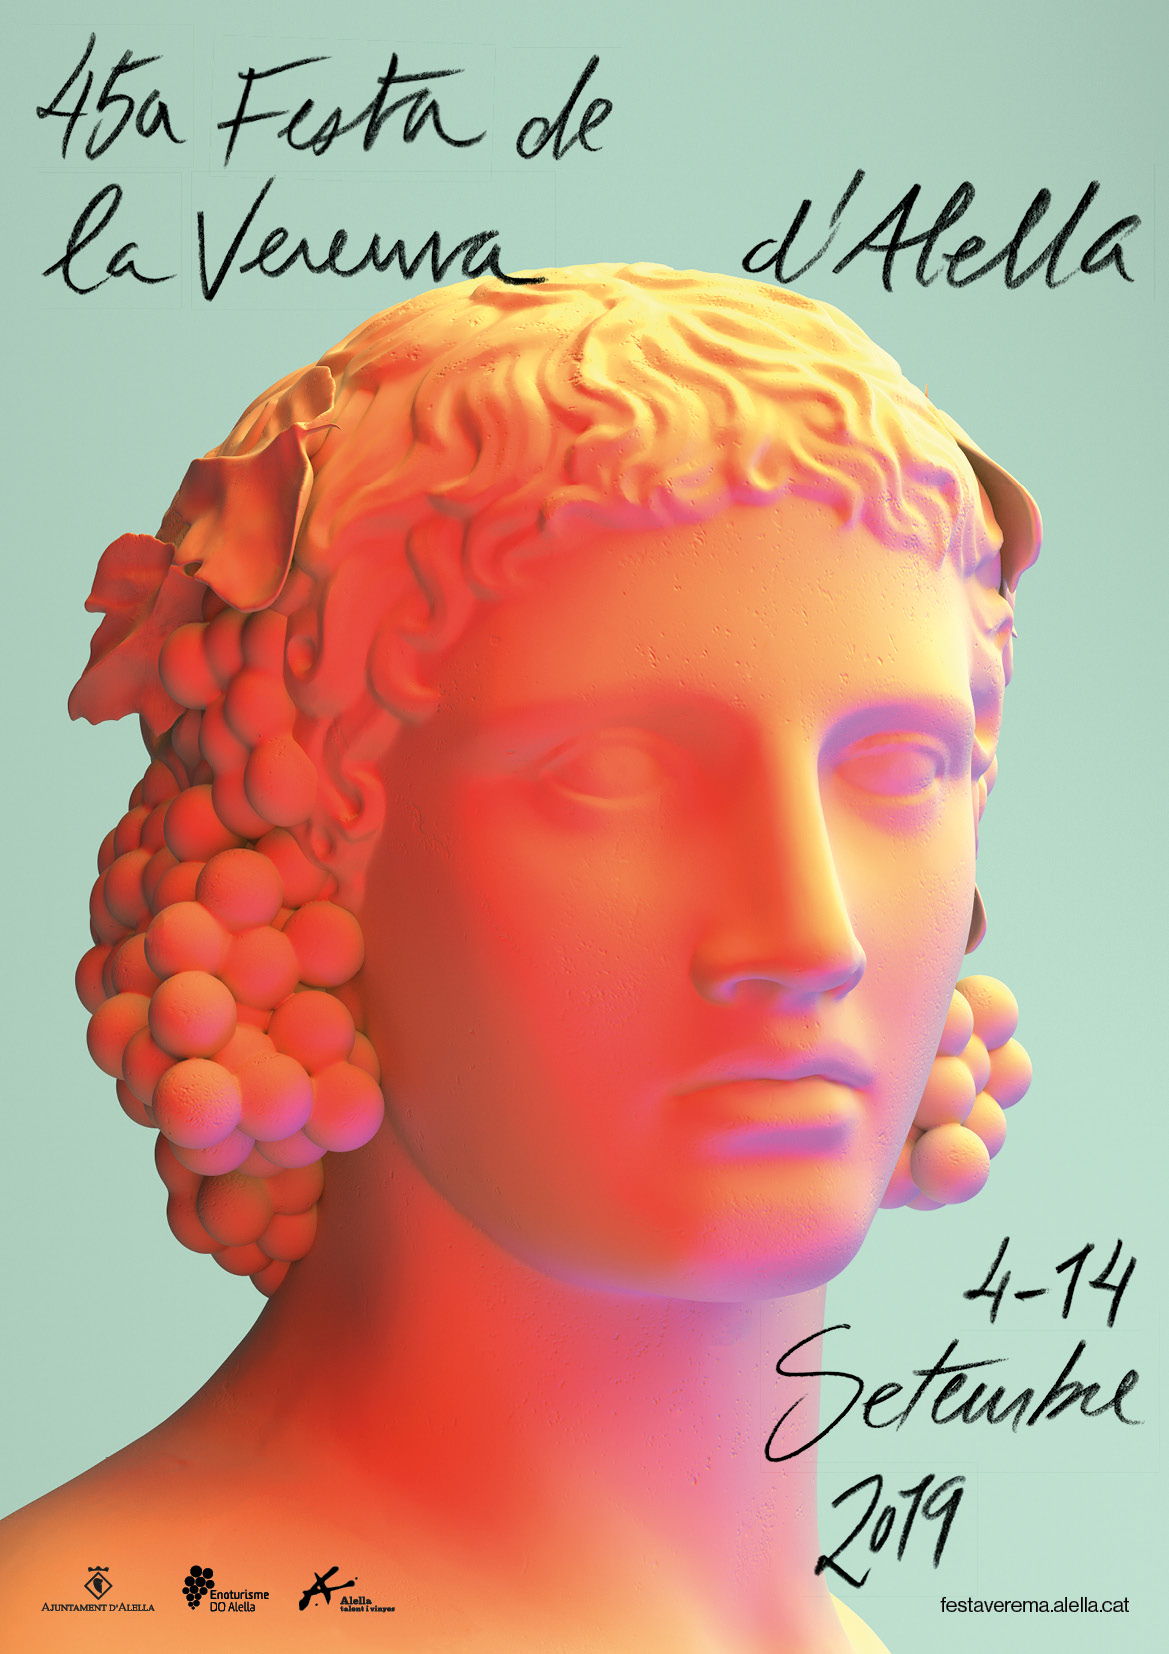 Convocat el concurs per a la imatge gràfica de la 46a Festa de la Verema